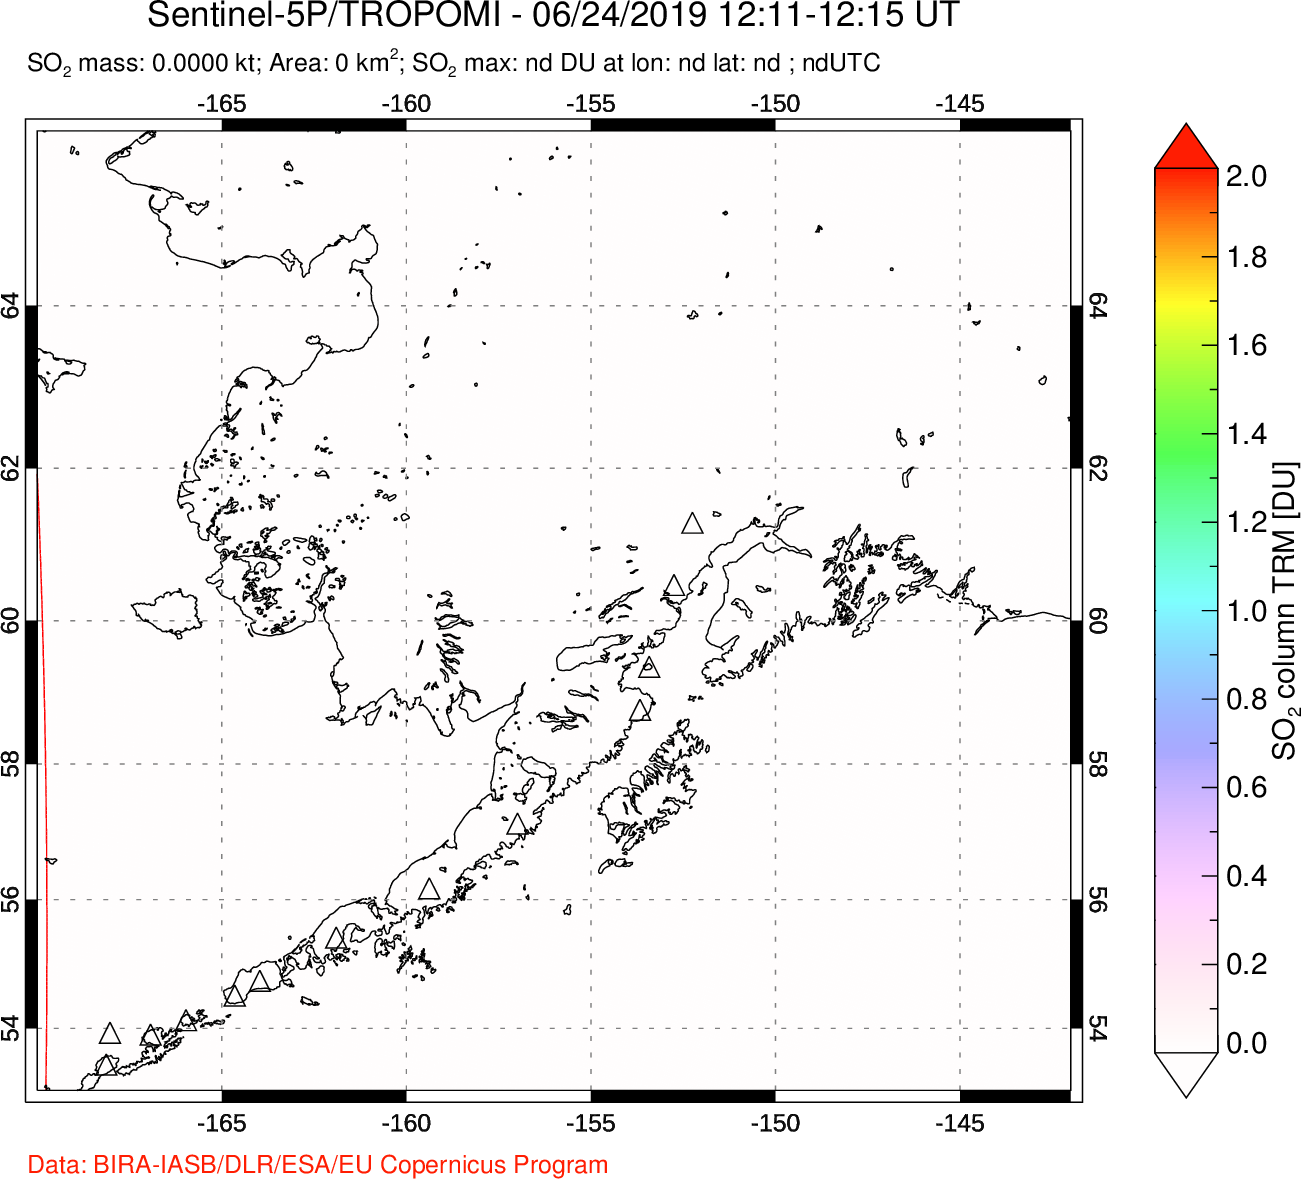 A sulfur dioxide image over Alaska, USA on Jun 24, 2019.